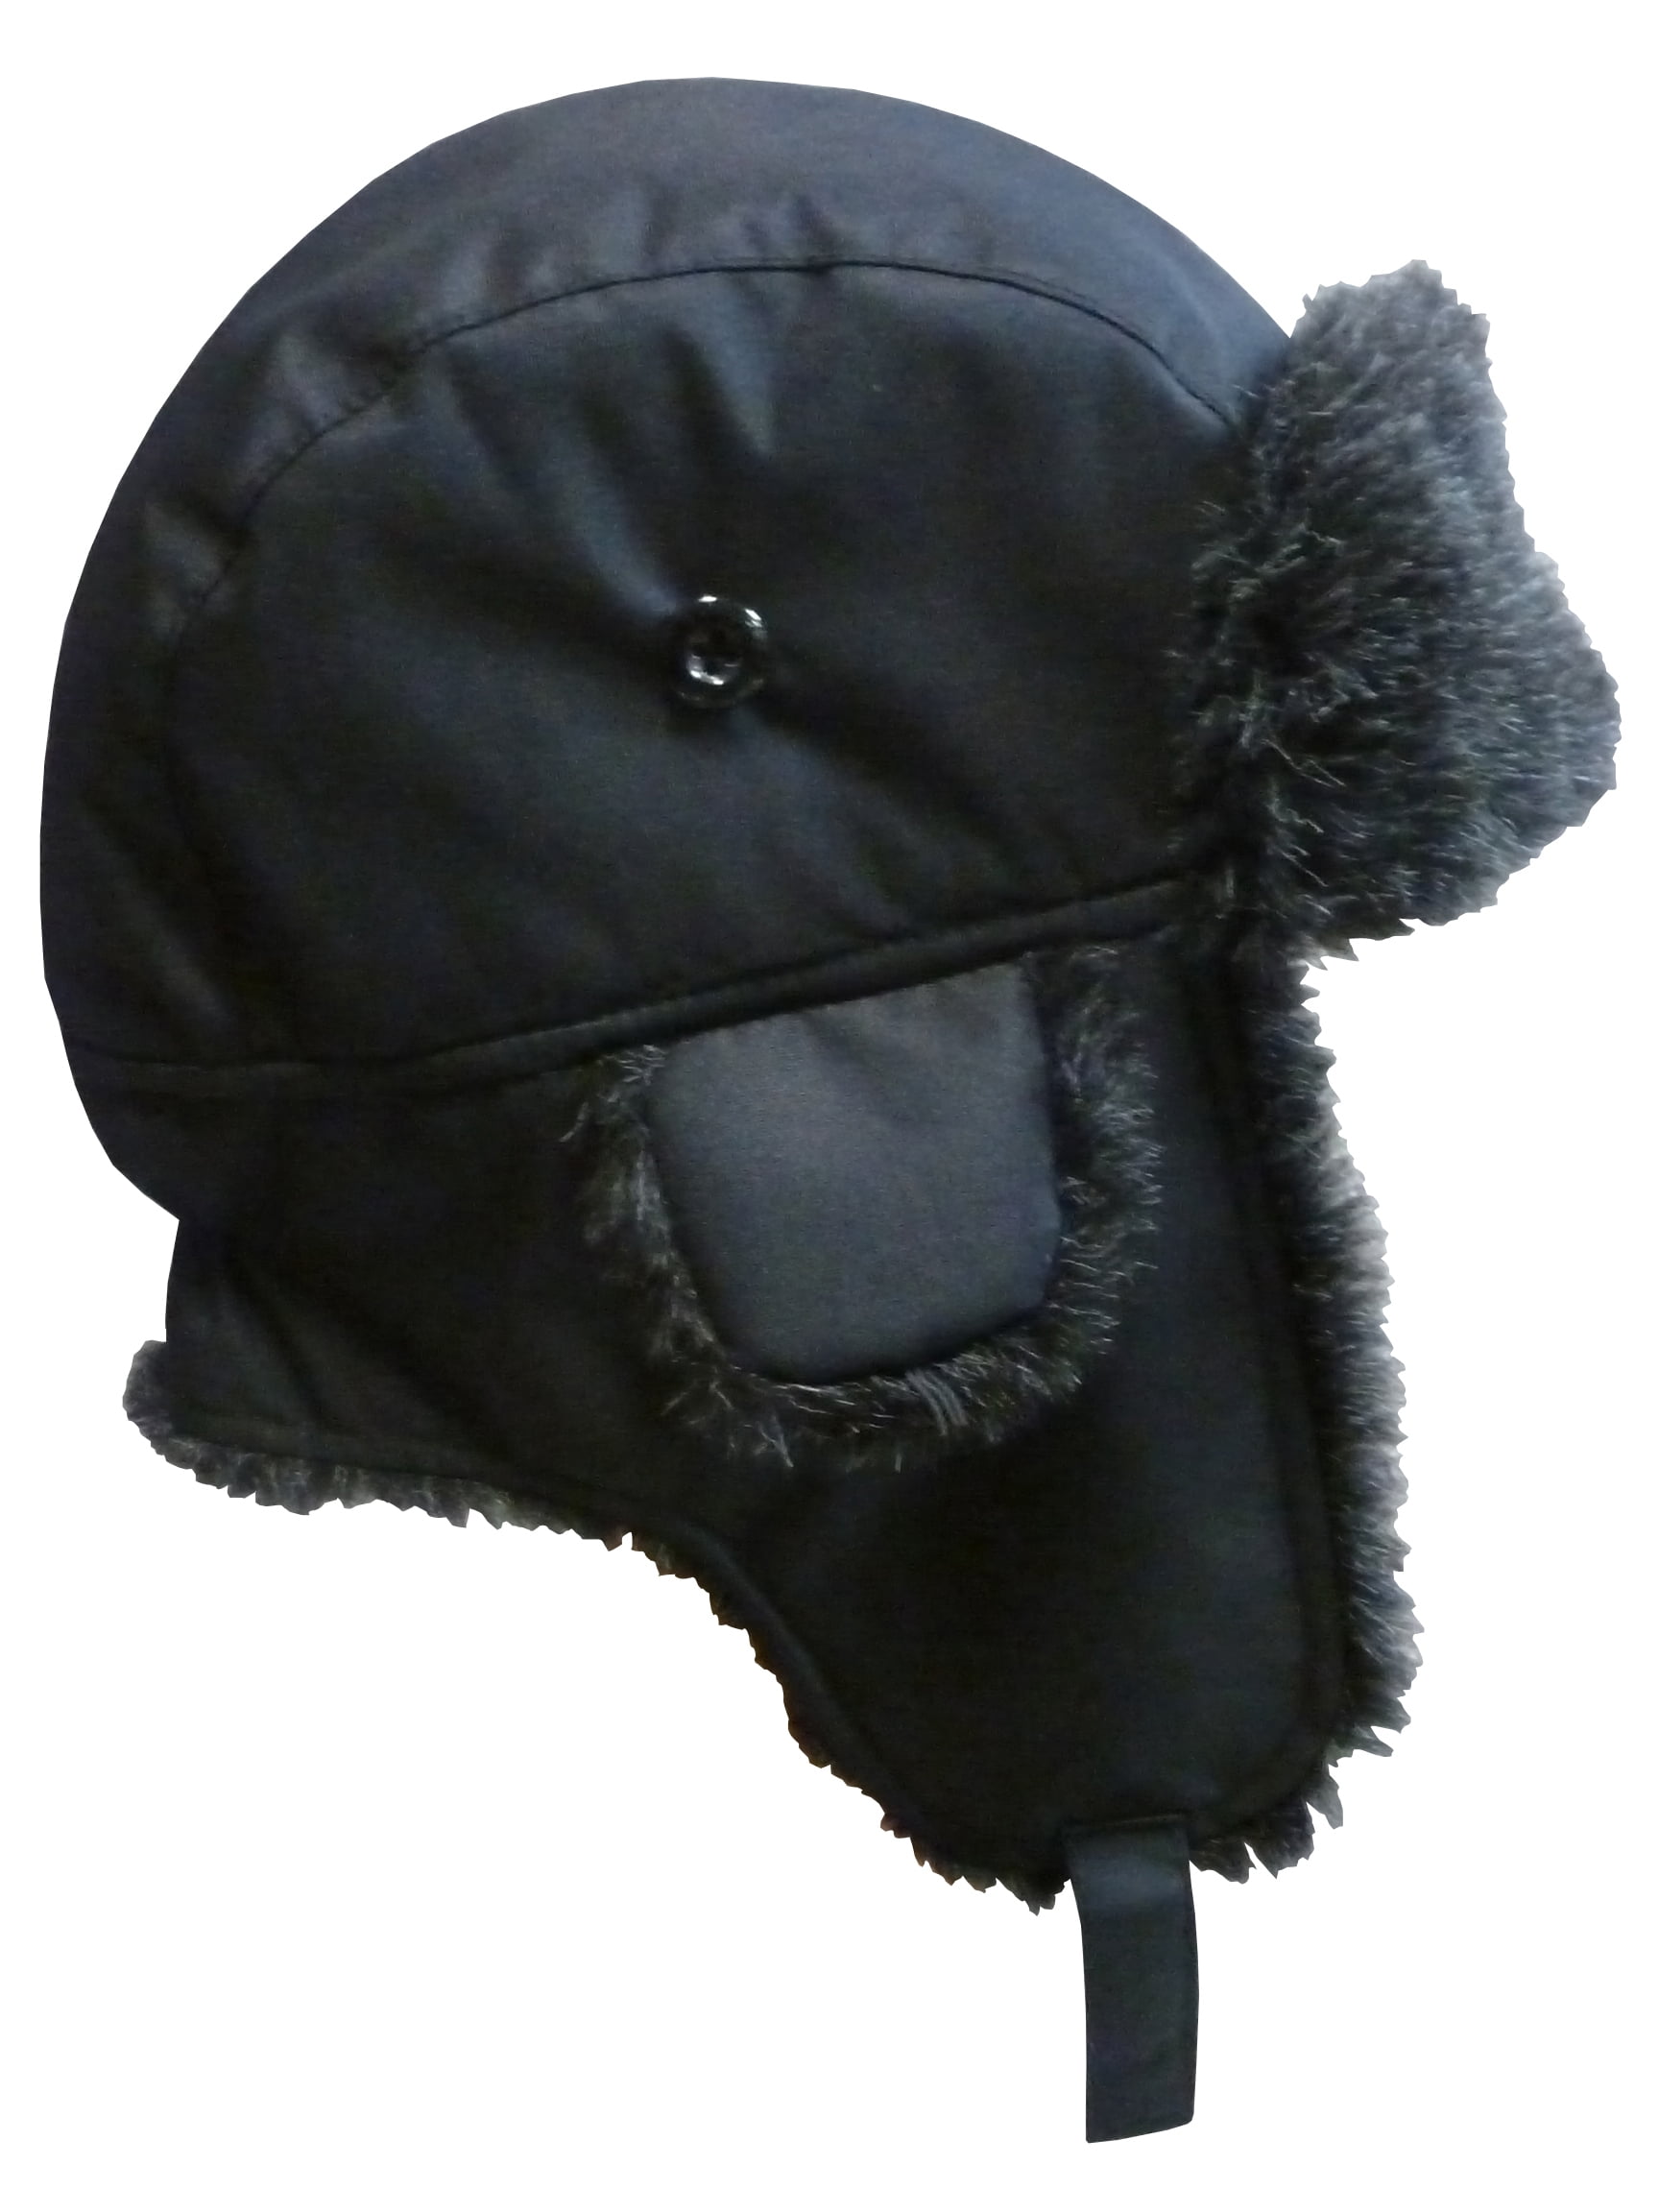 Home Prefer Toddler Boys Winter Hat with Earflaps Fleece Baseball Hat Visor Caps 